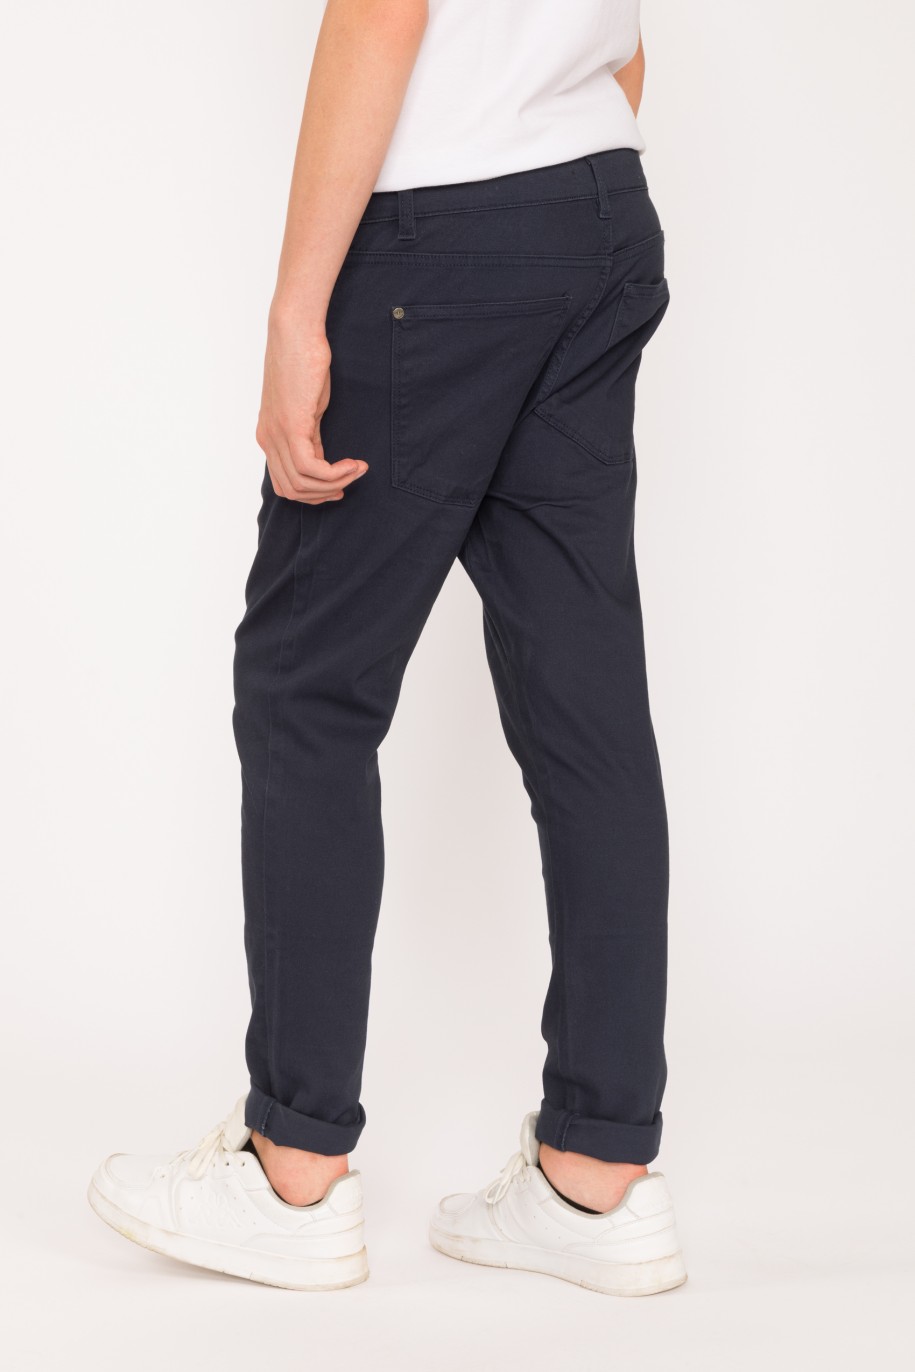 Granatowe materiałowe spodnie dla chłopaka LOOSE - 28423